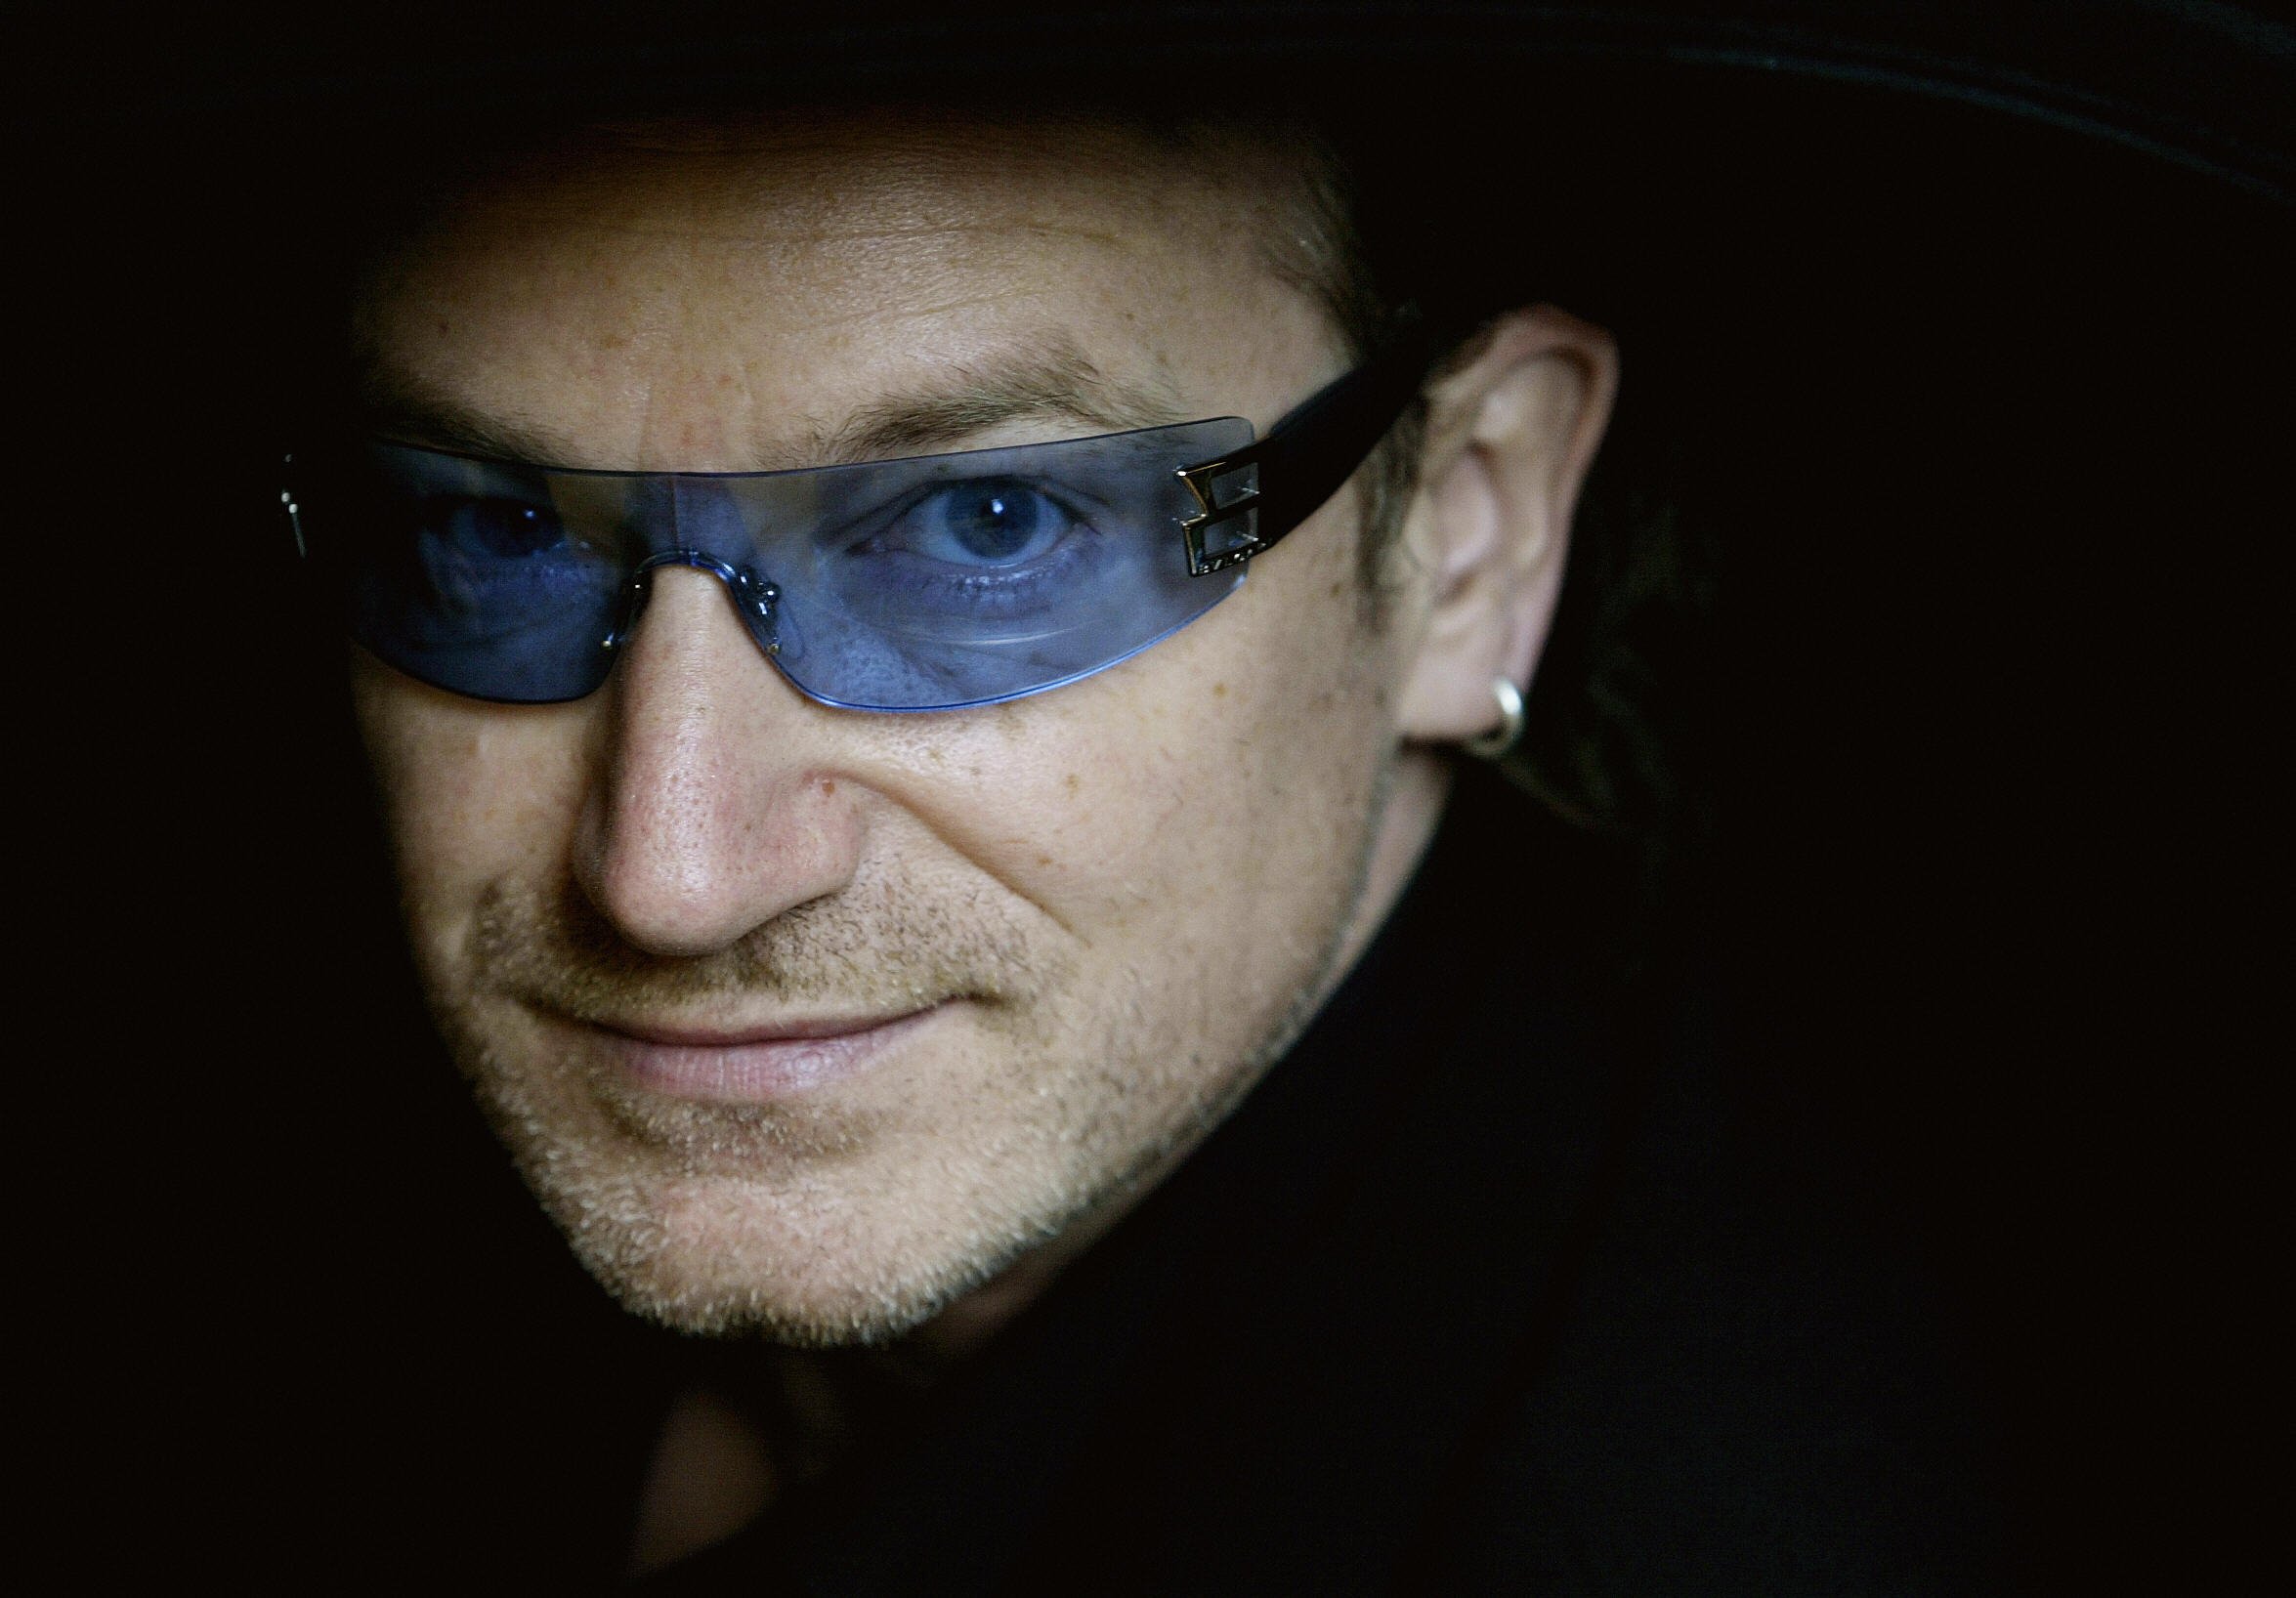 Bono in glasses